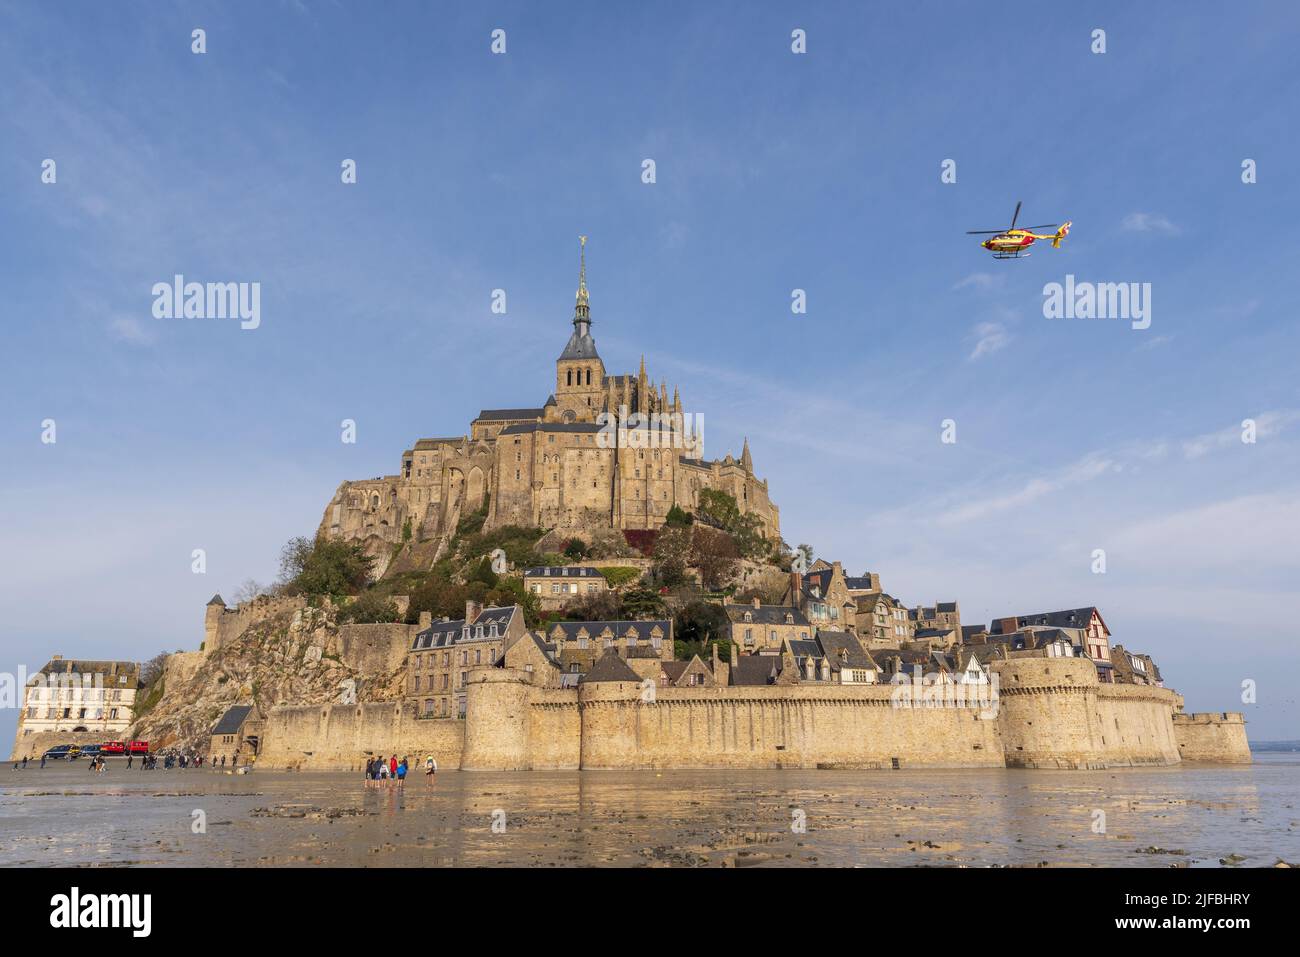 Francia, La Mancha, la bahía del Mont Saint Michel declarada Patrimonio de la Humanidad por la UNESCO, la Abadía del Mont Saint Michel, la seguridad civil Dragon Helicóptero, marea baja Foto de stock